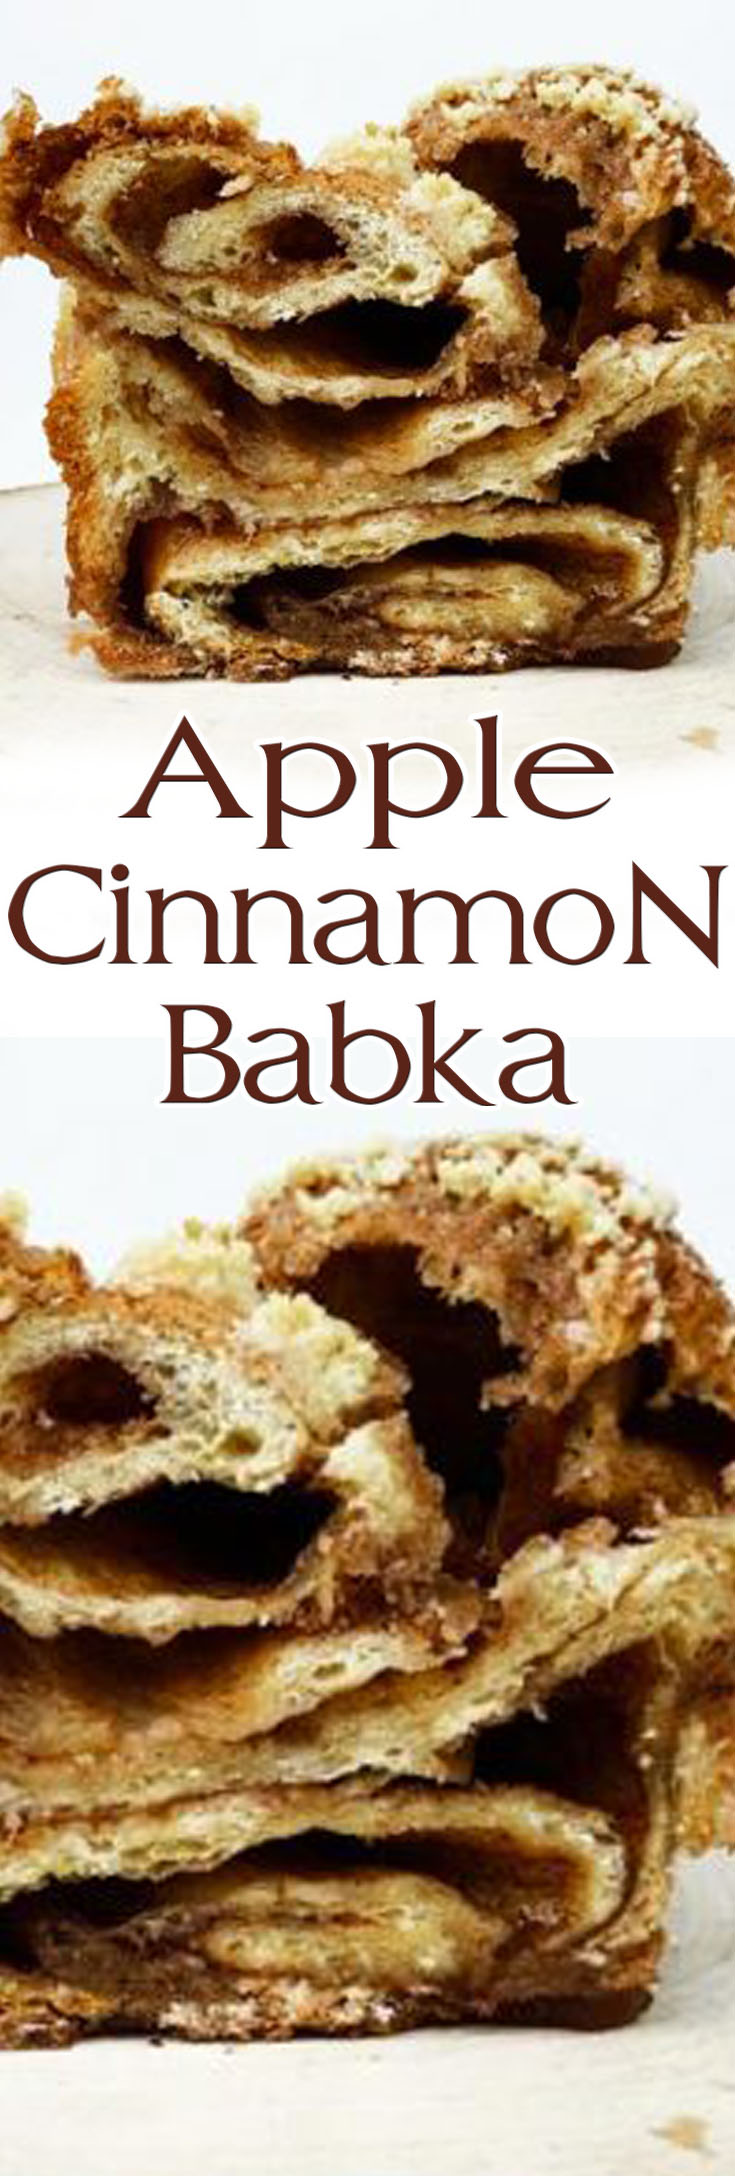 Apple Cinnamon Babka